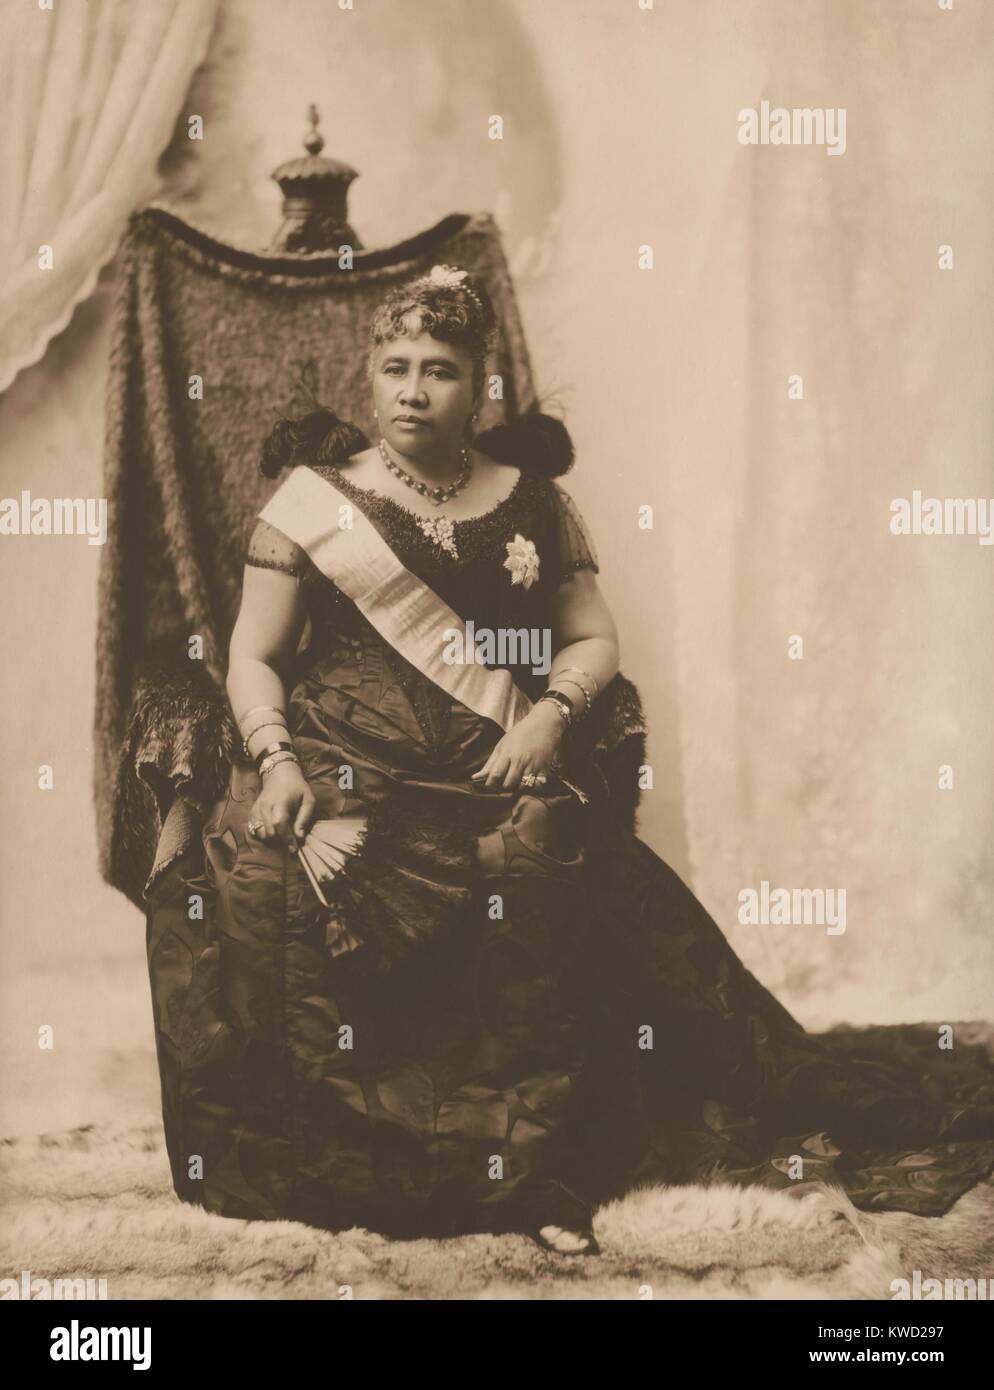 Regina Liliuokalani, ultimo sovrano di Hawaiian Kamehameha Dinastia, 1891. Ella fu deposto in un colpo di stato detat a gennaio 17, 1893. Foto di Franz-Otto-Koch (BSLOC 2017 20 60) Foto Stock